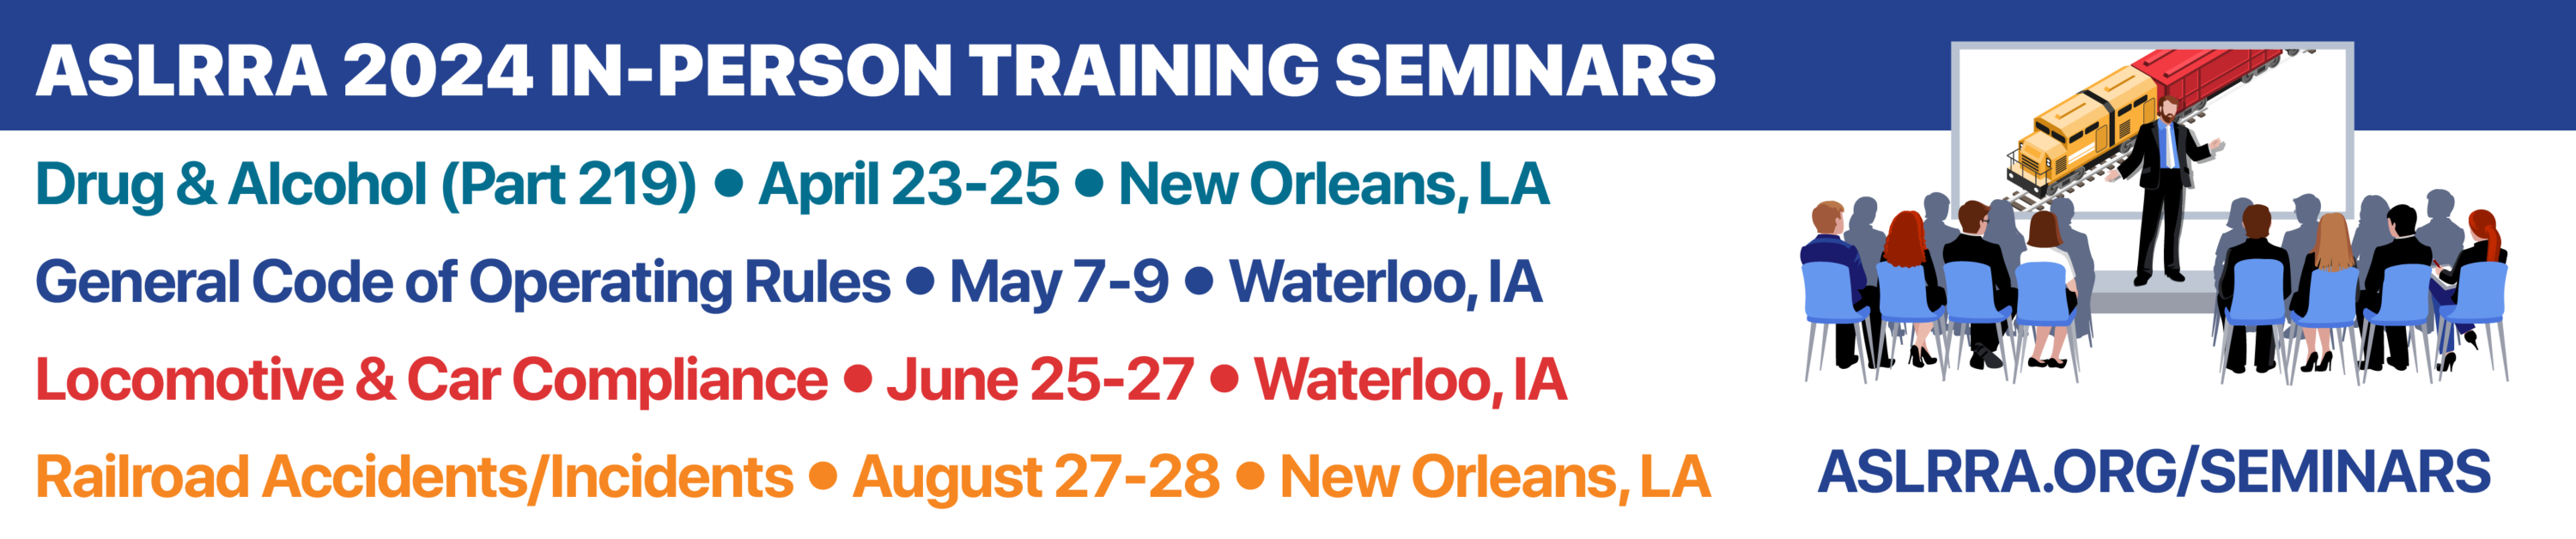 ASLRRA 2024 Training Seminars